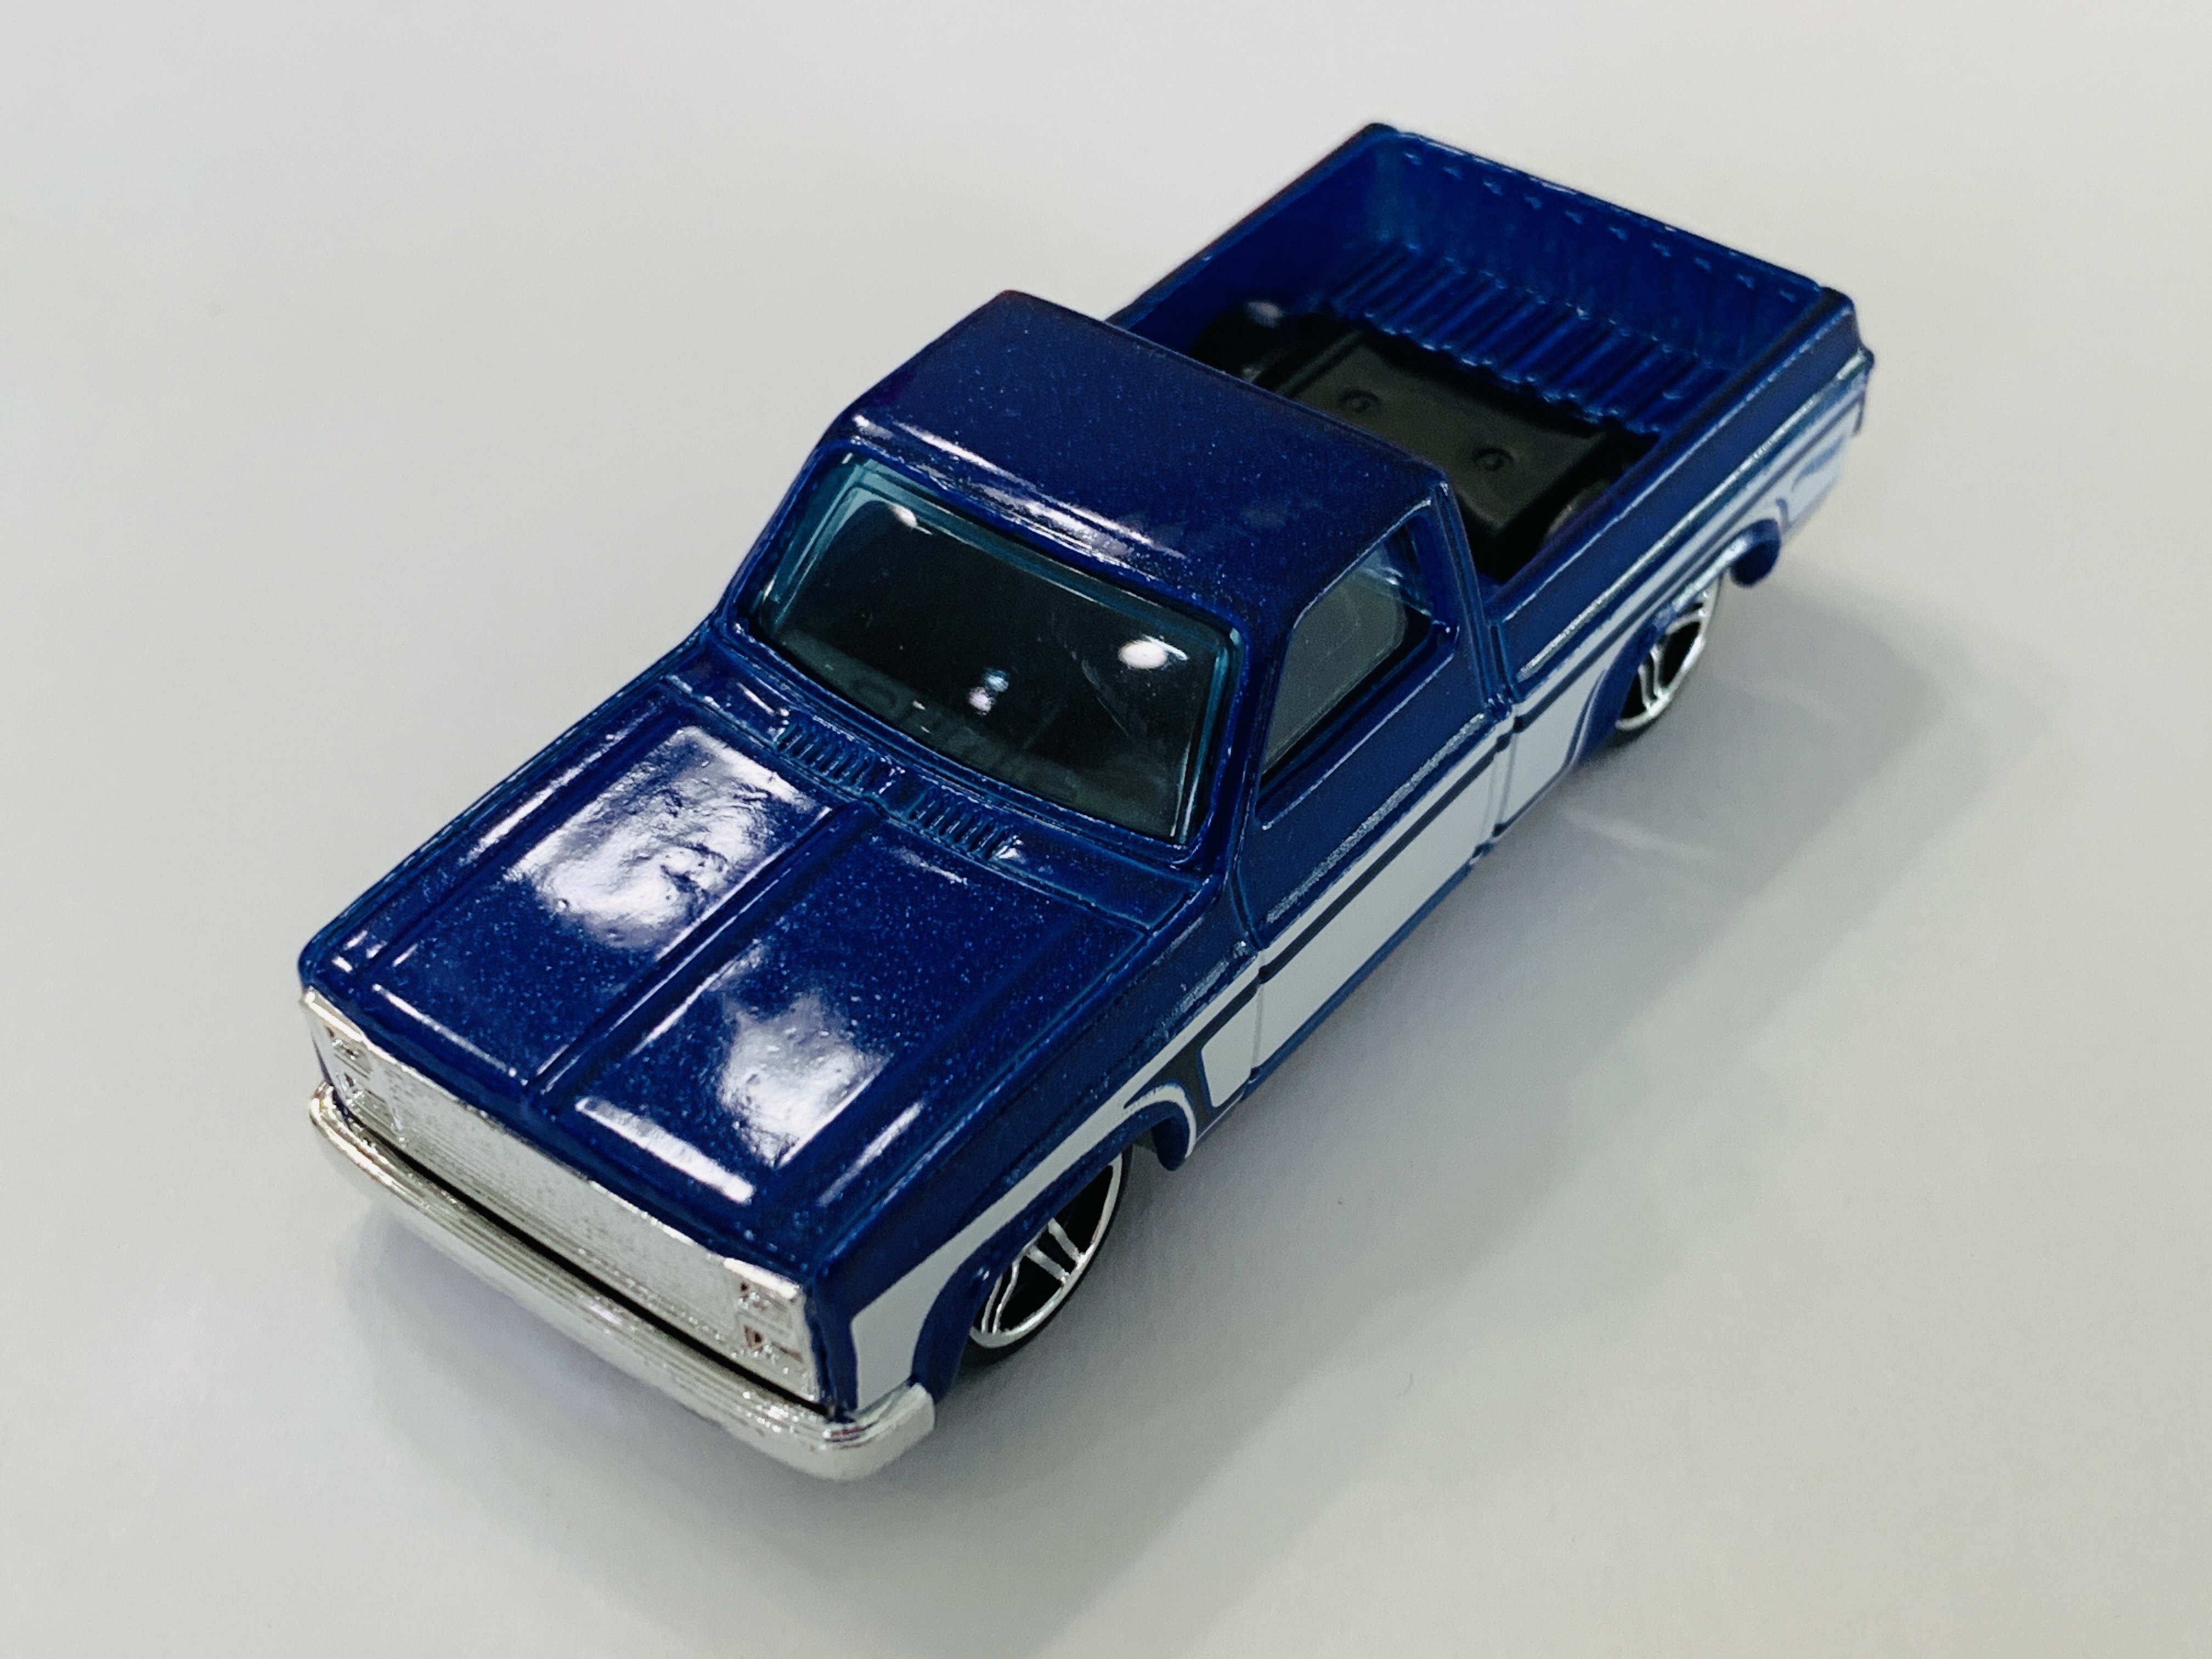 Hot Wheels '83 Chevy Silverado - 5 Pack Exclusive